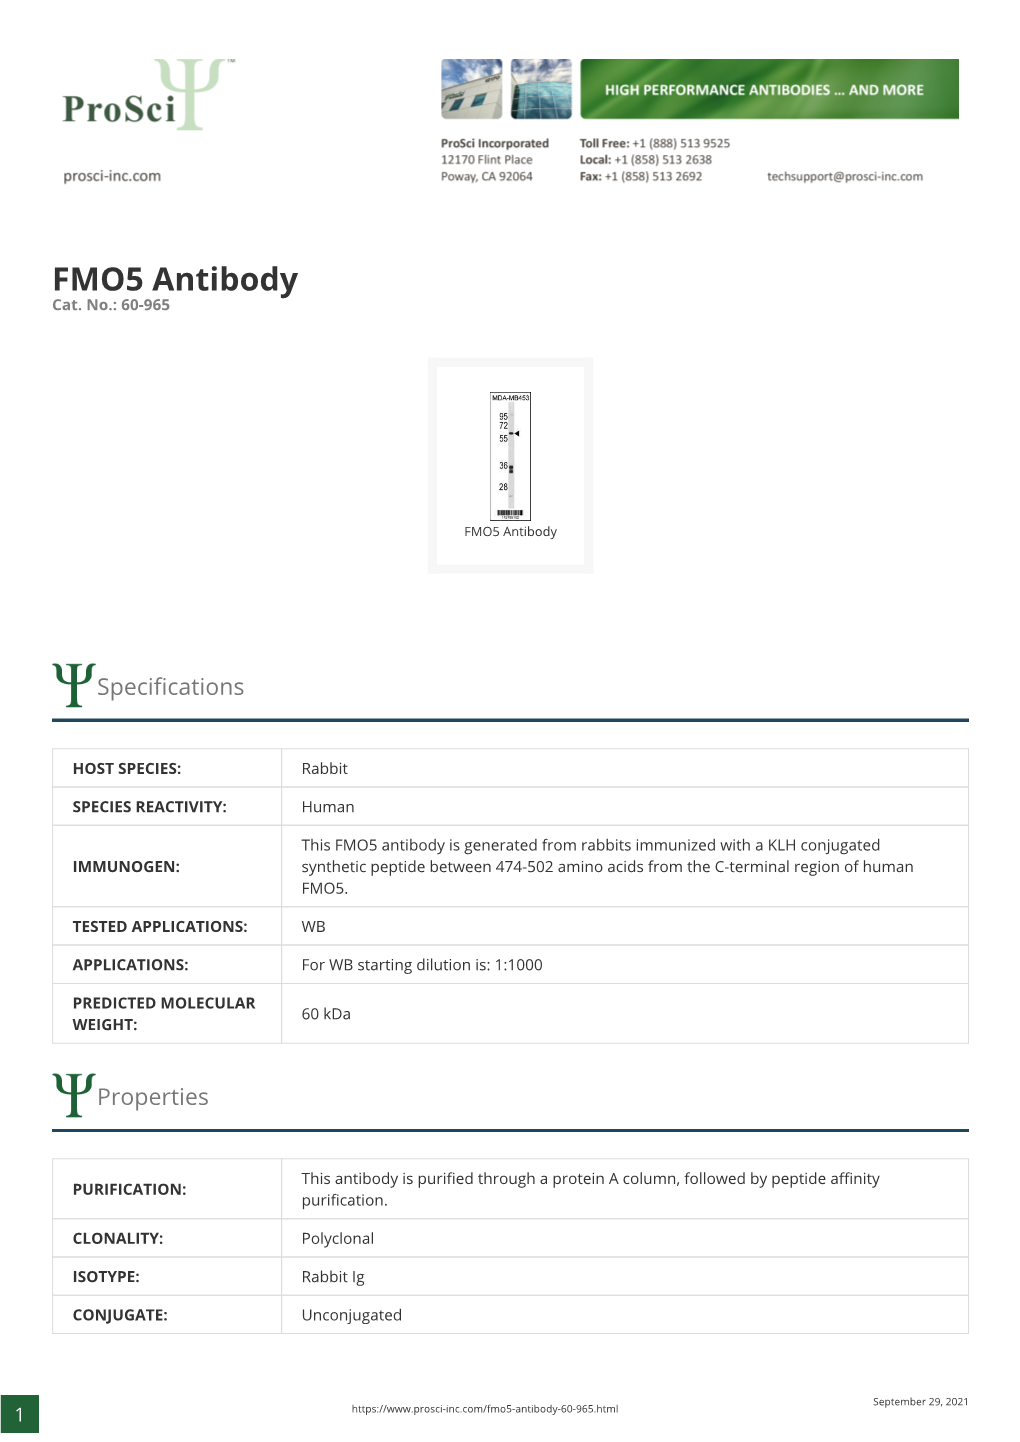 FMO5 Antibody Cat